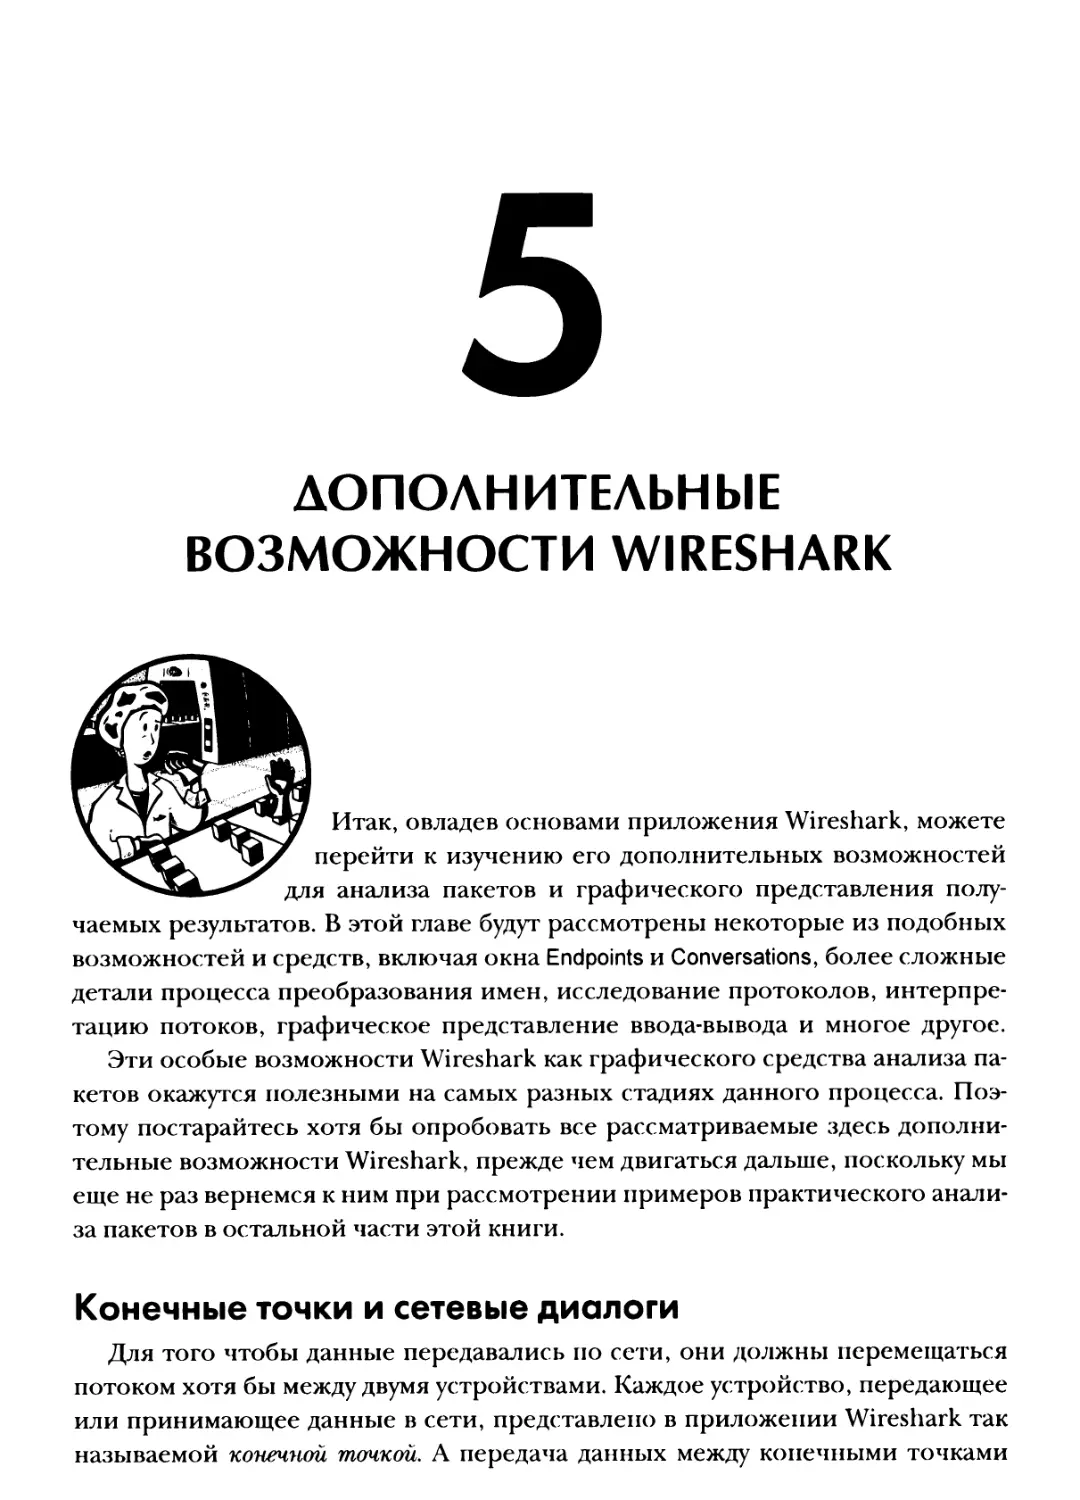 Глава 5. Дополнительные возможности Wireshark
Конечные точки и сетевые диалоги